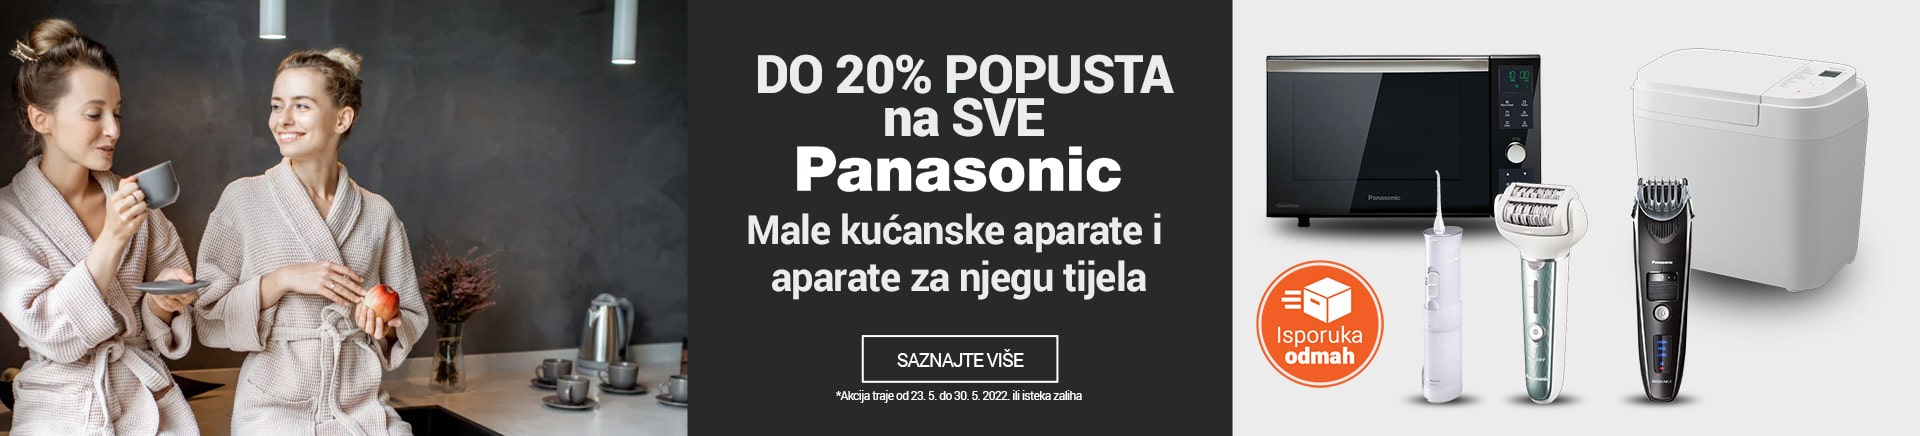 Panasonic- Mali kućanski aparati i aparati za njegu tijela do 20% popusta na sve